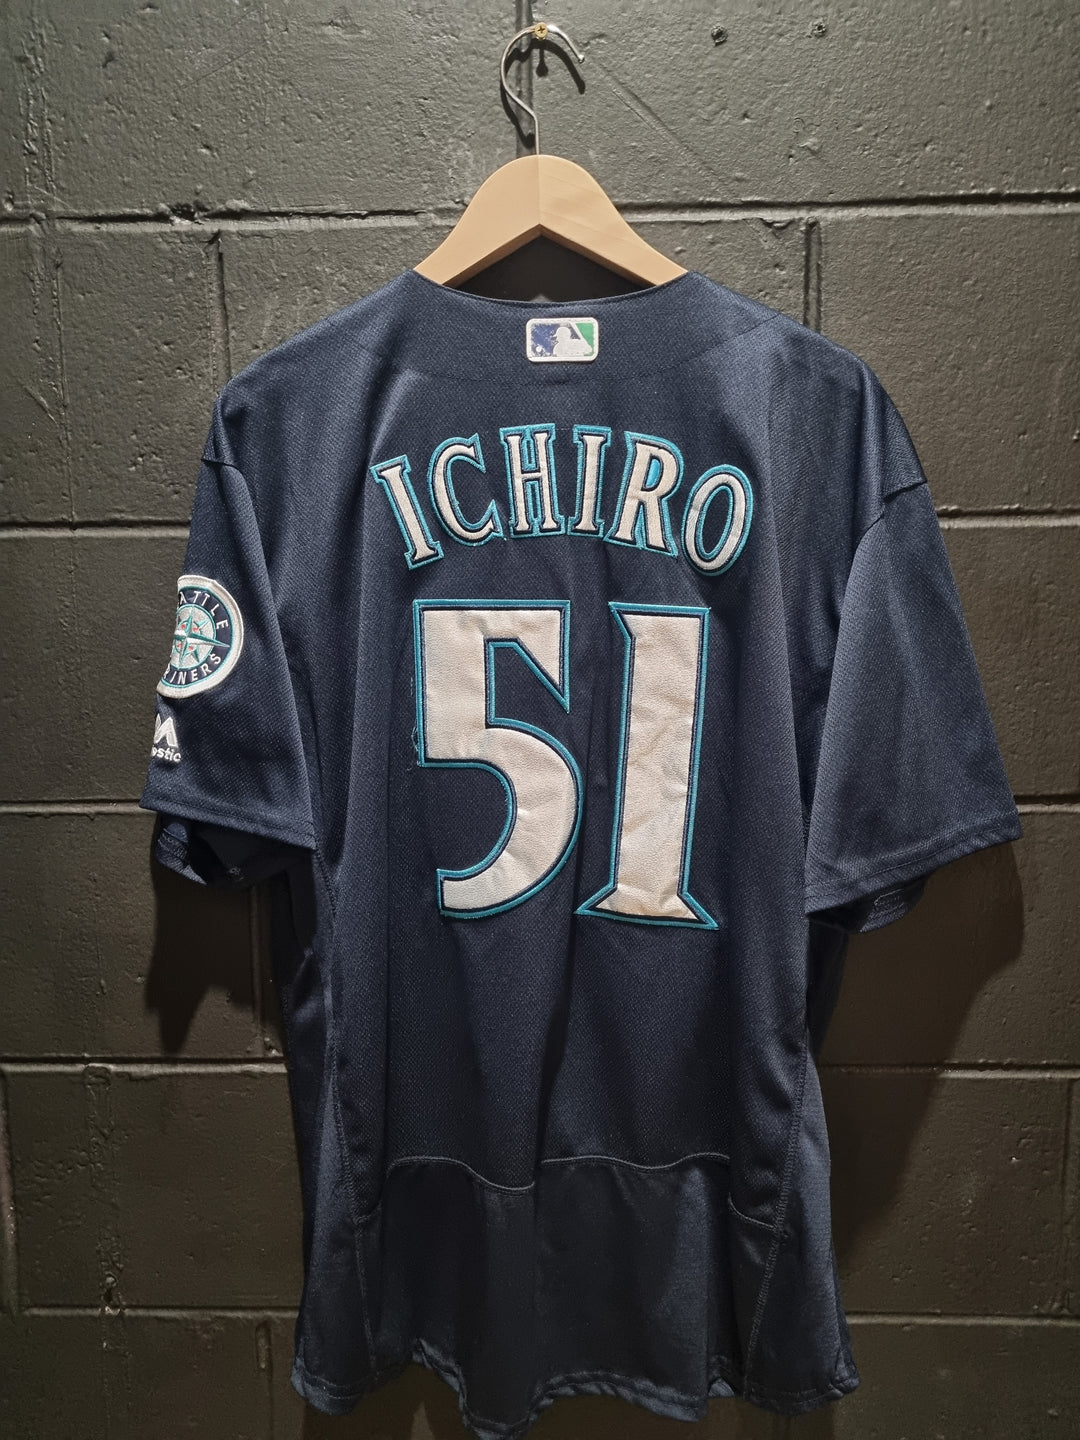 Seattle Mariners Ichiro Suzuki XL